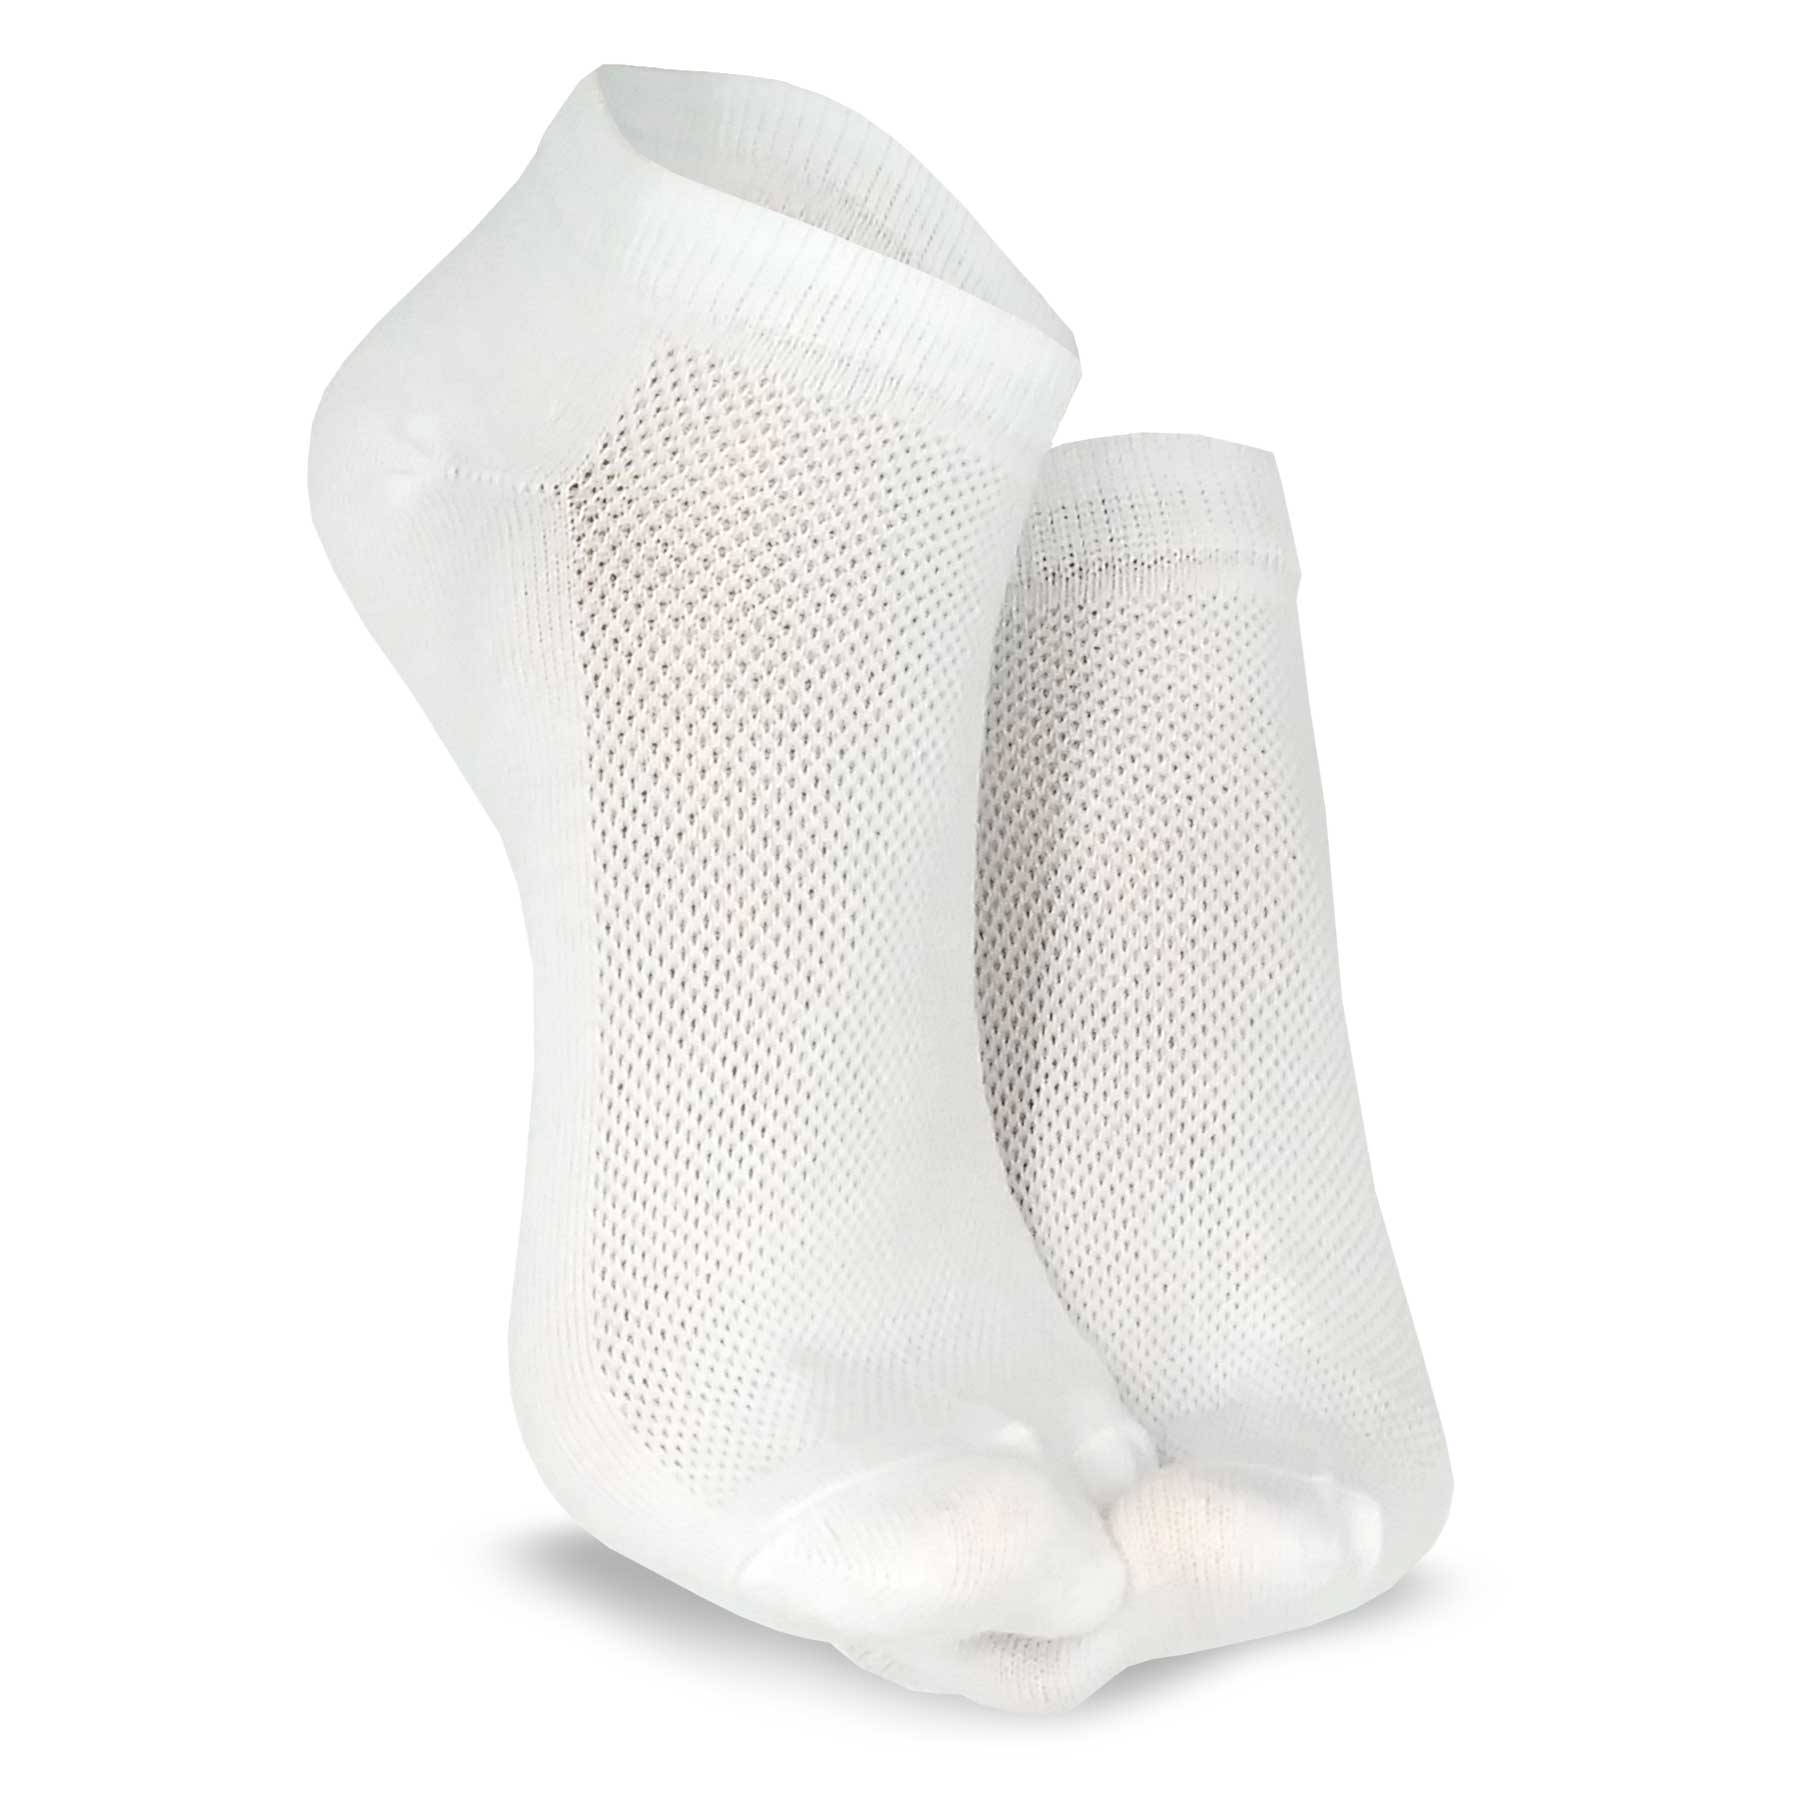 TeeHee Socks Women's Toe Topper Nylon No Show Pale Beige, Black 5-Pack  (11785)